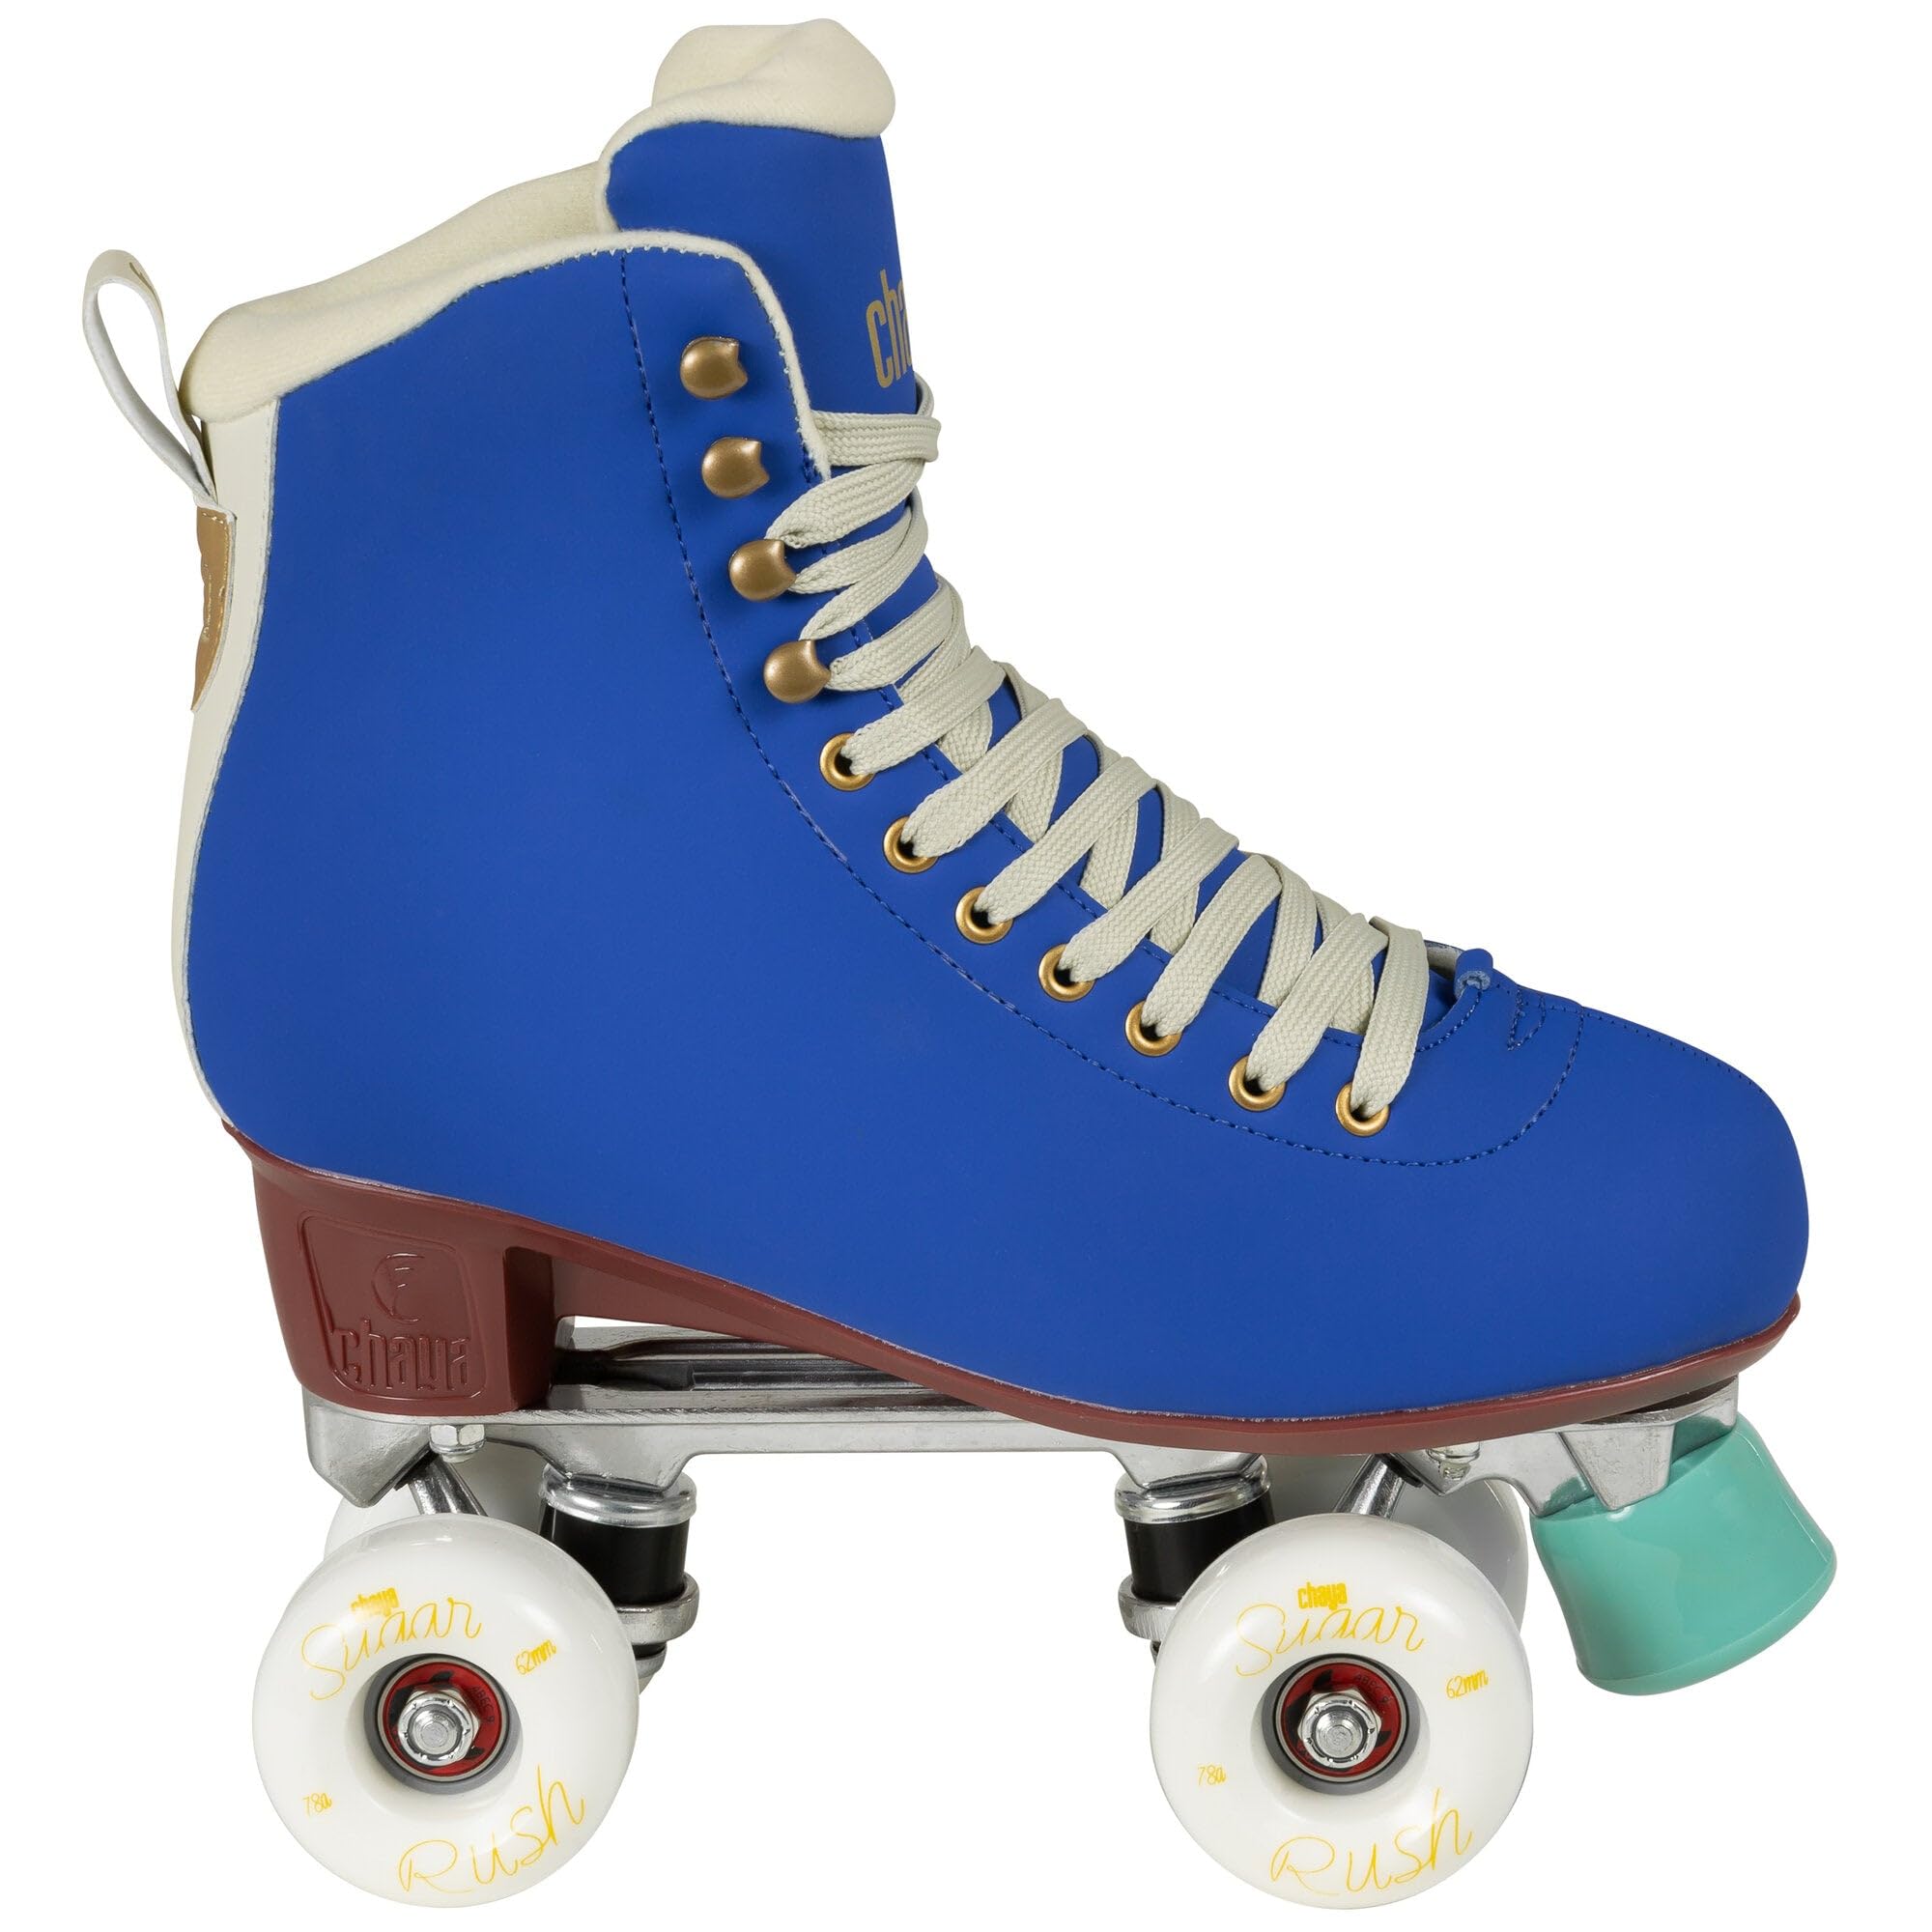 Chaya Roller Skate Melrose Deluxe Cobalt, für Damen